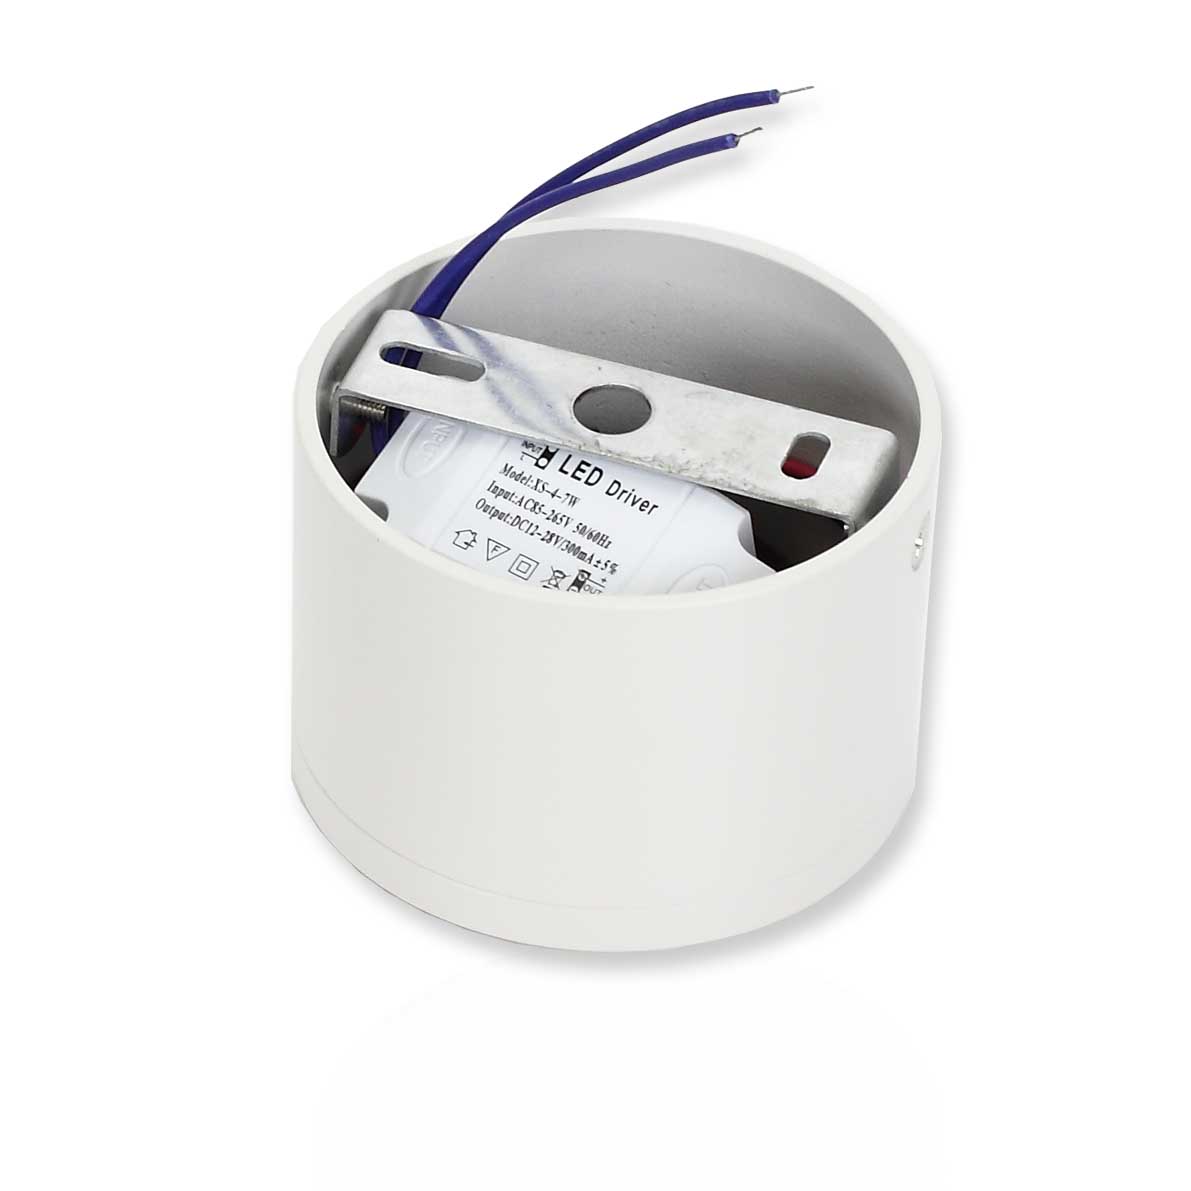 Светодиодные светильники Светодиодный светильник JH-THD13-7W B749 (7W, Warm white)